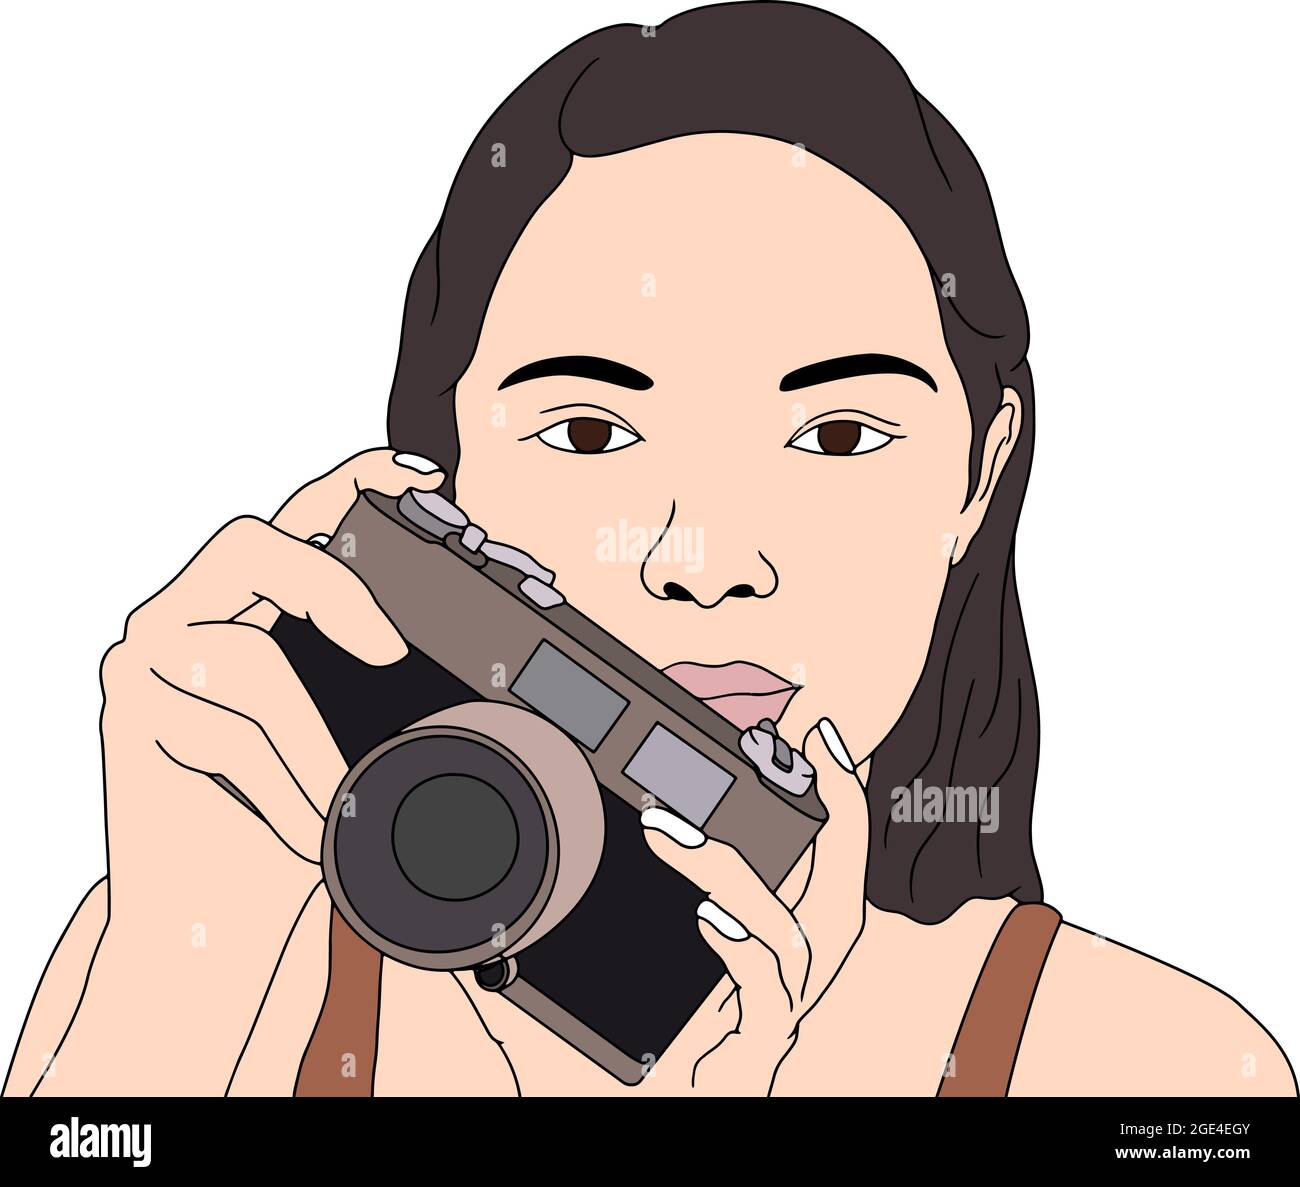 Bella ragazza giovane che tiene la macchina fotografica nelle sue mani. Illustrazione di caratteri disegnati a mano. Foto Stock